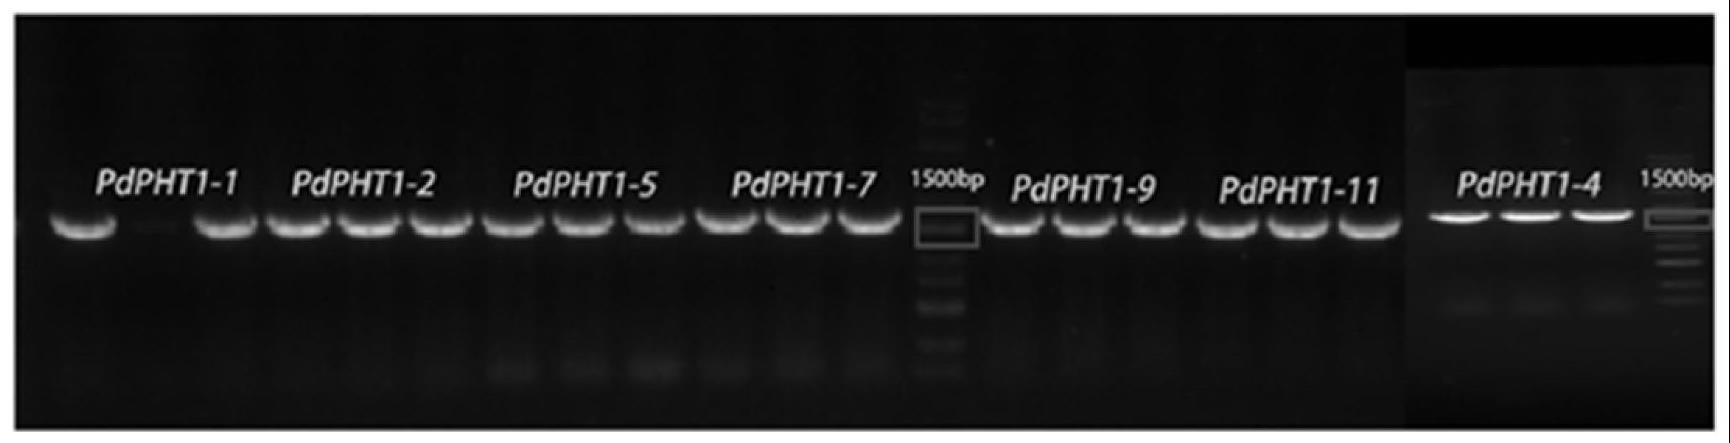 山新杨耐低磷基因PdPHT1-2及其编码蛋白和应用